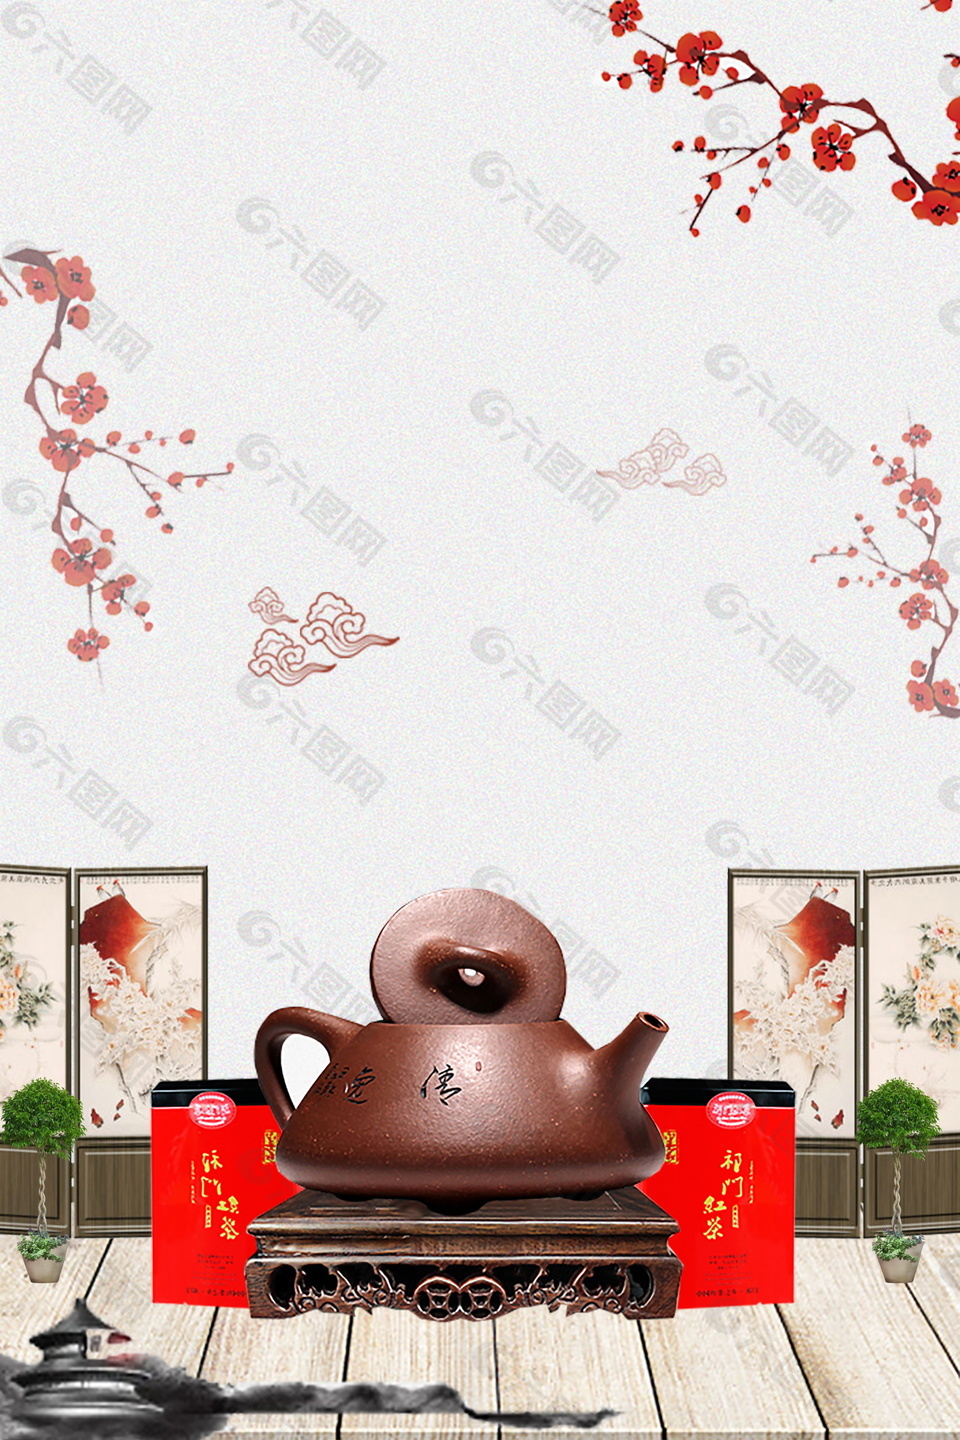 古典茶壶红梅花枝祁门红茶背景素材